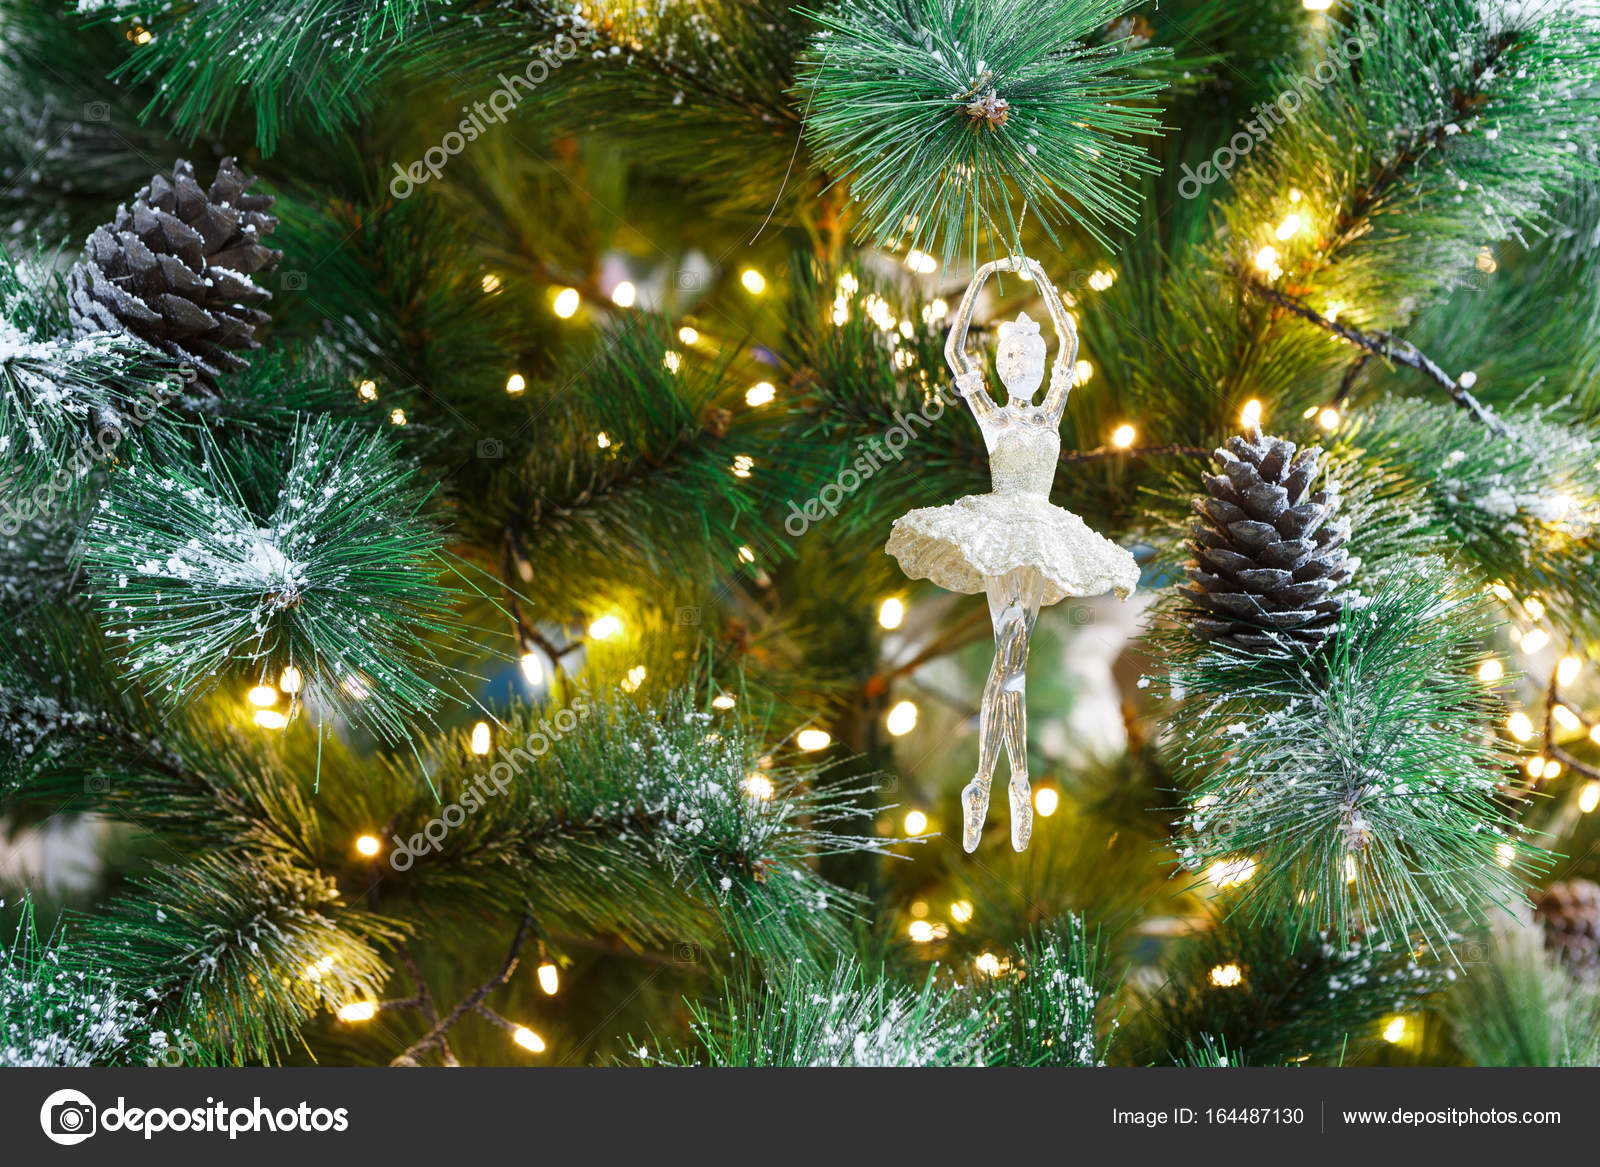 TÅ‚o wakacje Christmas tree ÅšwiÄ™ta magia i piÄ™kno GaÅ‚Ä™zie drzewa sosny puszysty z szyszki posypany Å›niegiem i ozdobione bÅ‚yszczÄ…cy garland